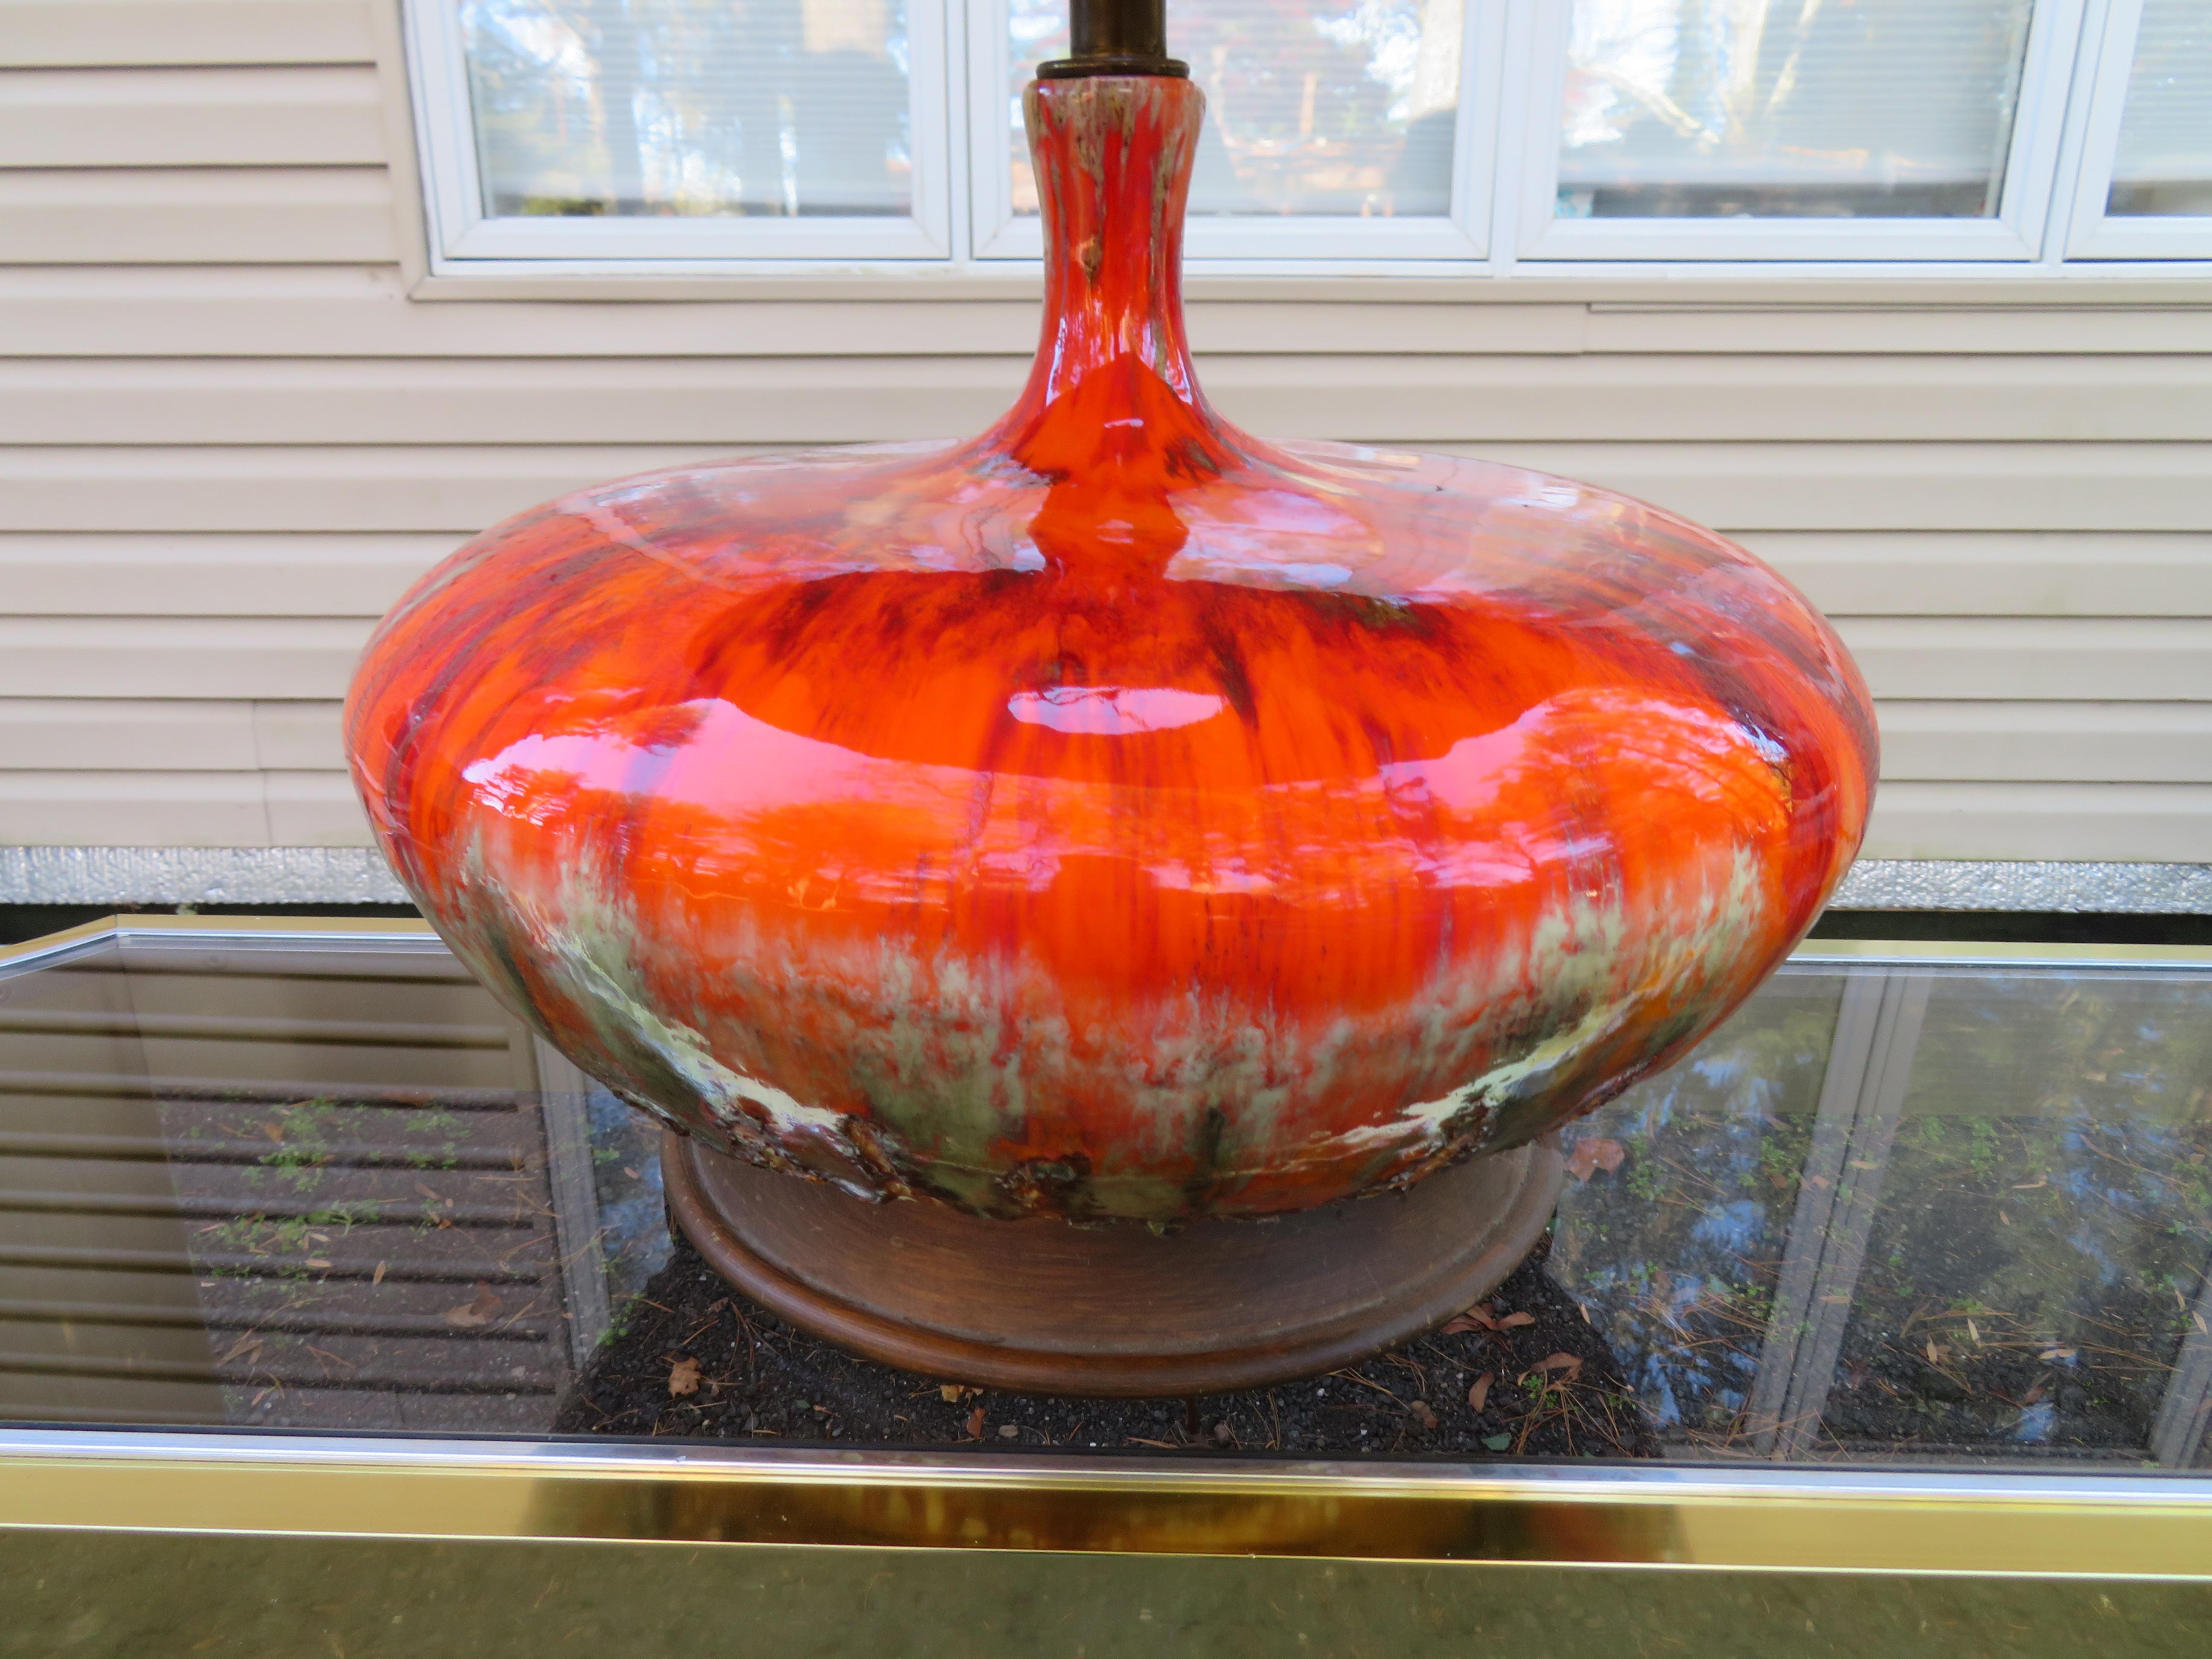 Überragend schöne orangefarbene, riesige, gedrungene Lava-Tropfglasurlampe. Dieses riesige bunte Keramik-Kunstwerk ist auch eine tolle Lampe - wie cool ist das denn? Ich liebe diese Lampe so sehr, dass ich selbst eine haben musste. Diese Fat Boy